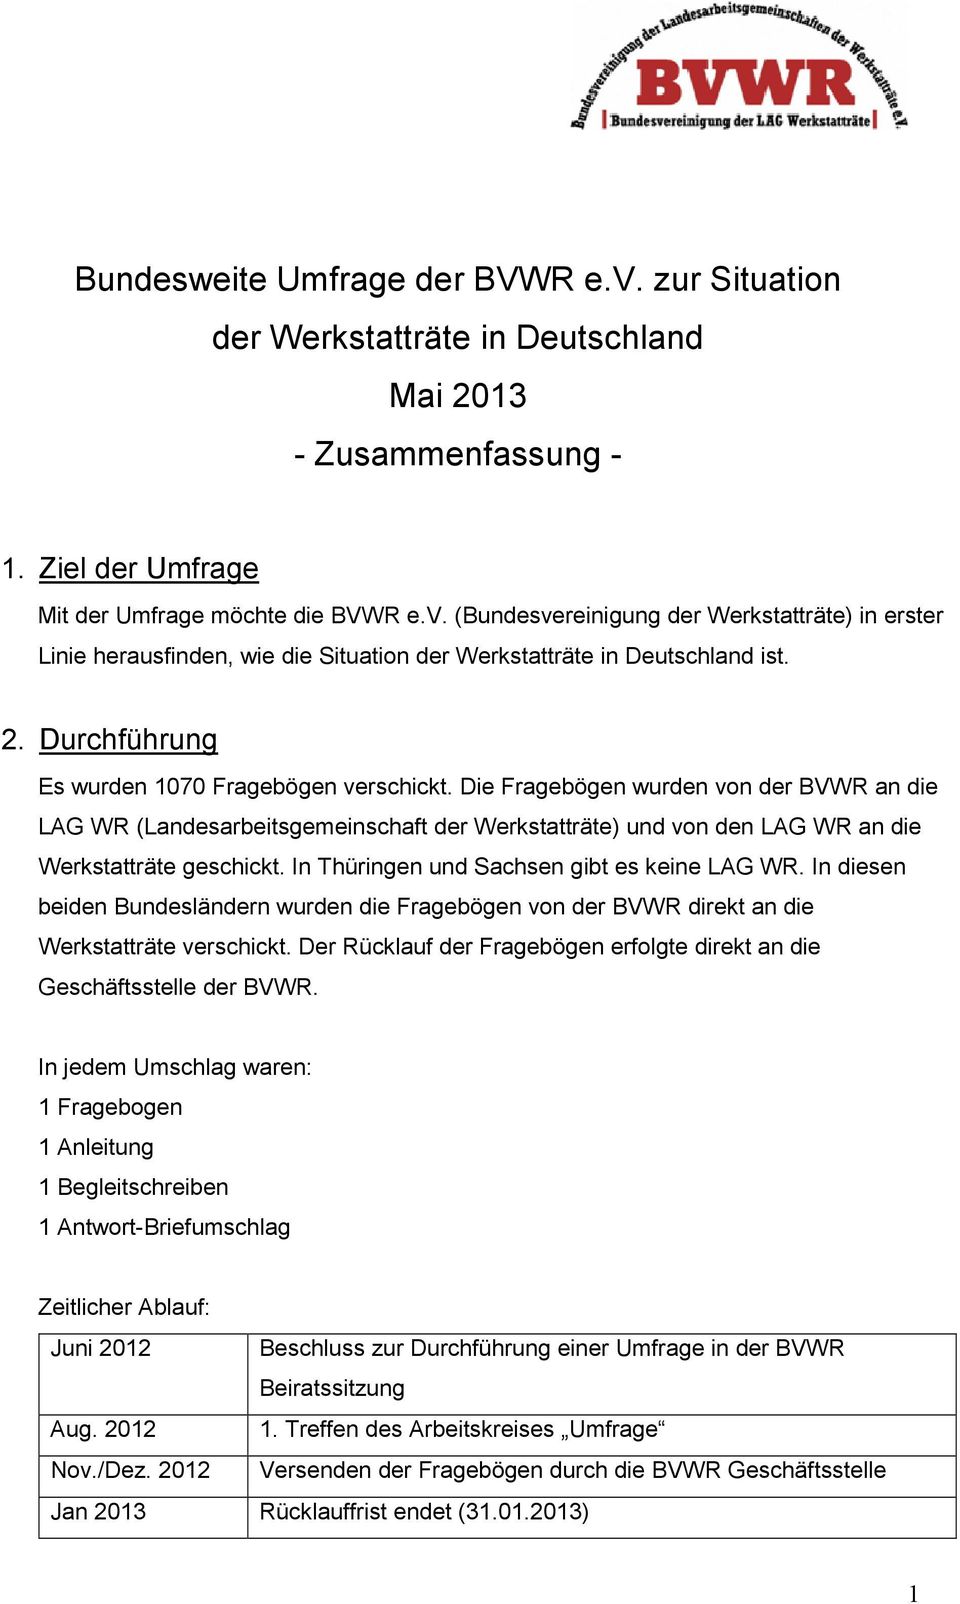 In Thüringen und Sachsen gibt es keine LAG WR. In diesen beiden Bundesländern wurden die Fragebögen von der BVWR direkt an die Werkstatträte verschickt.